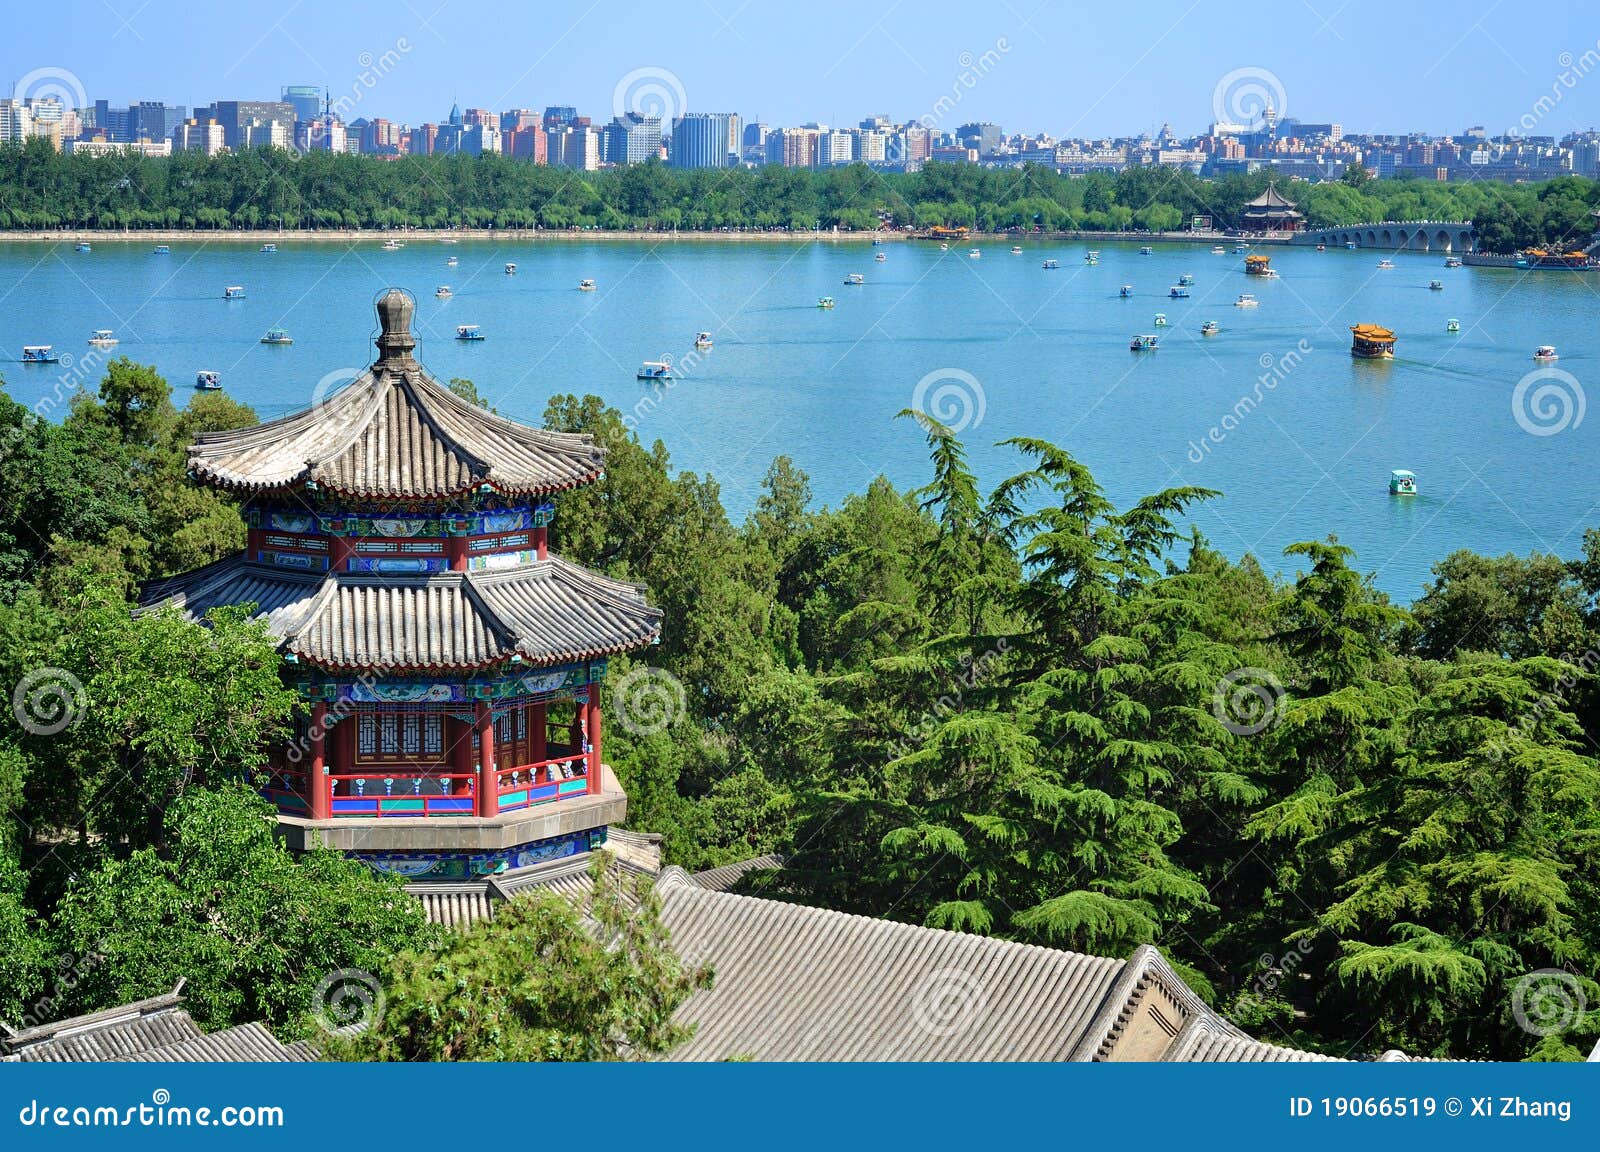 Beijing Cityscape-The Summer Palace Lake Stock Image - Image of ...